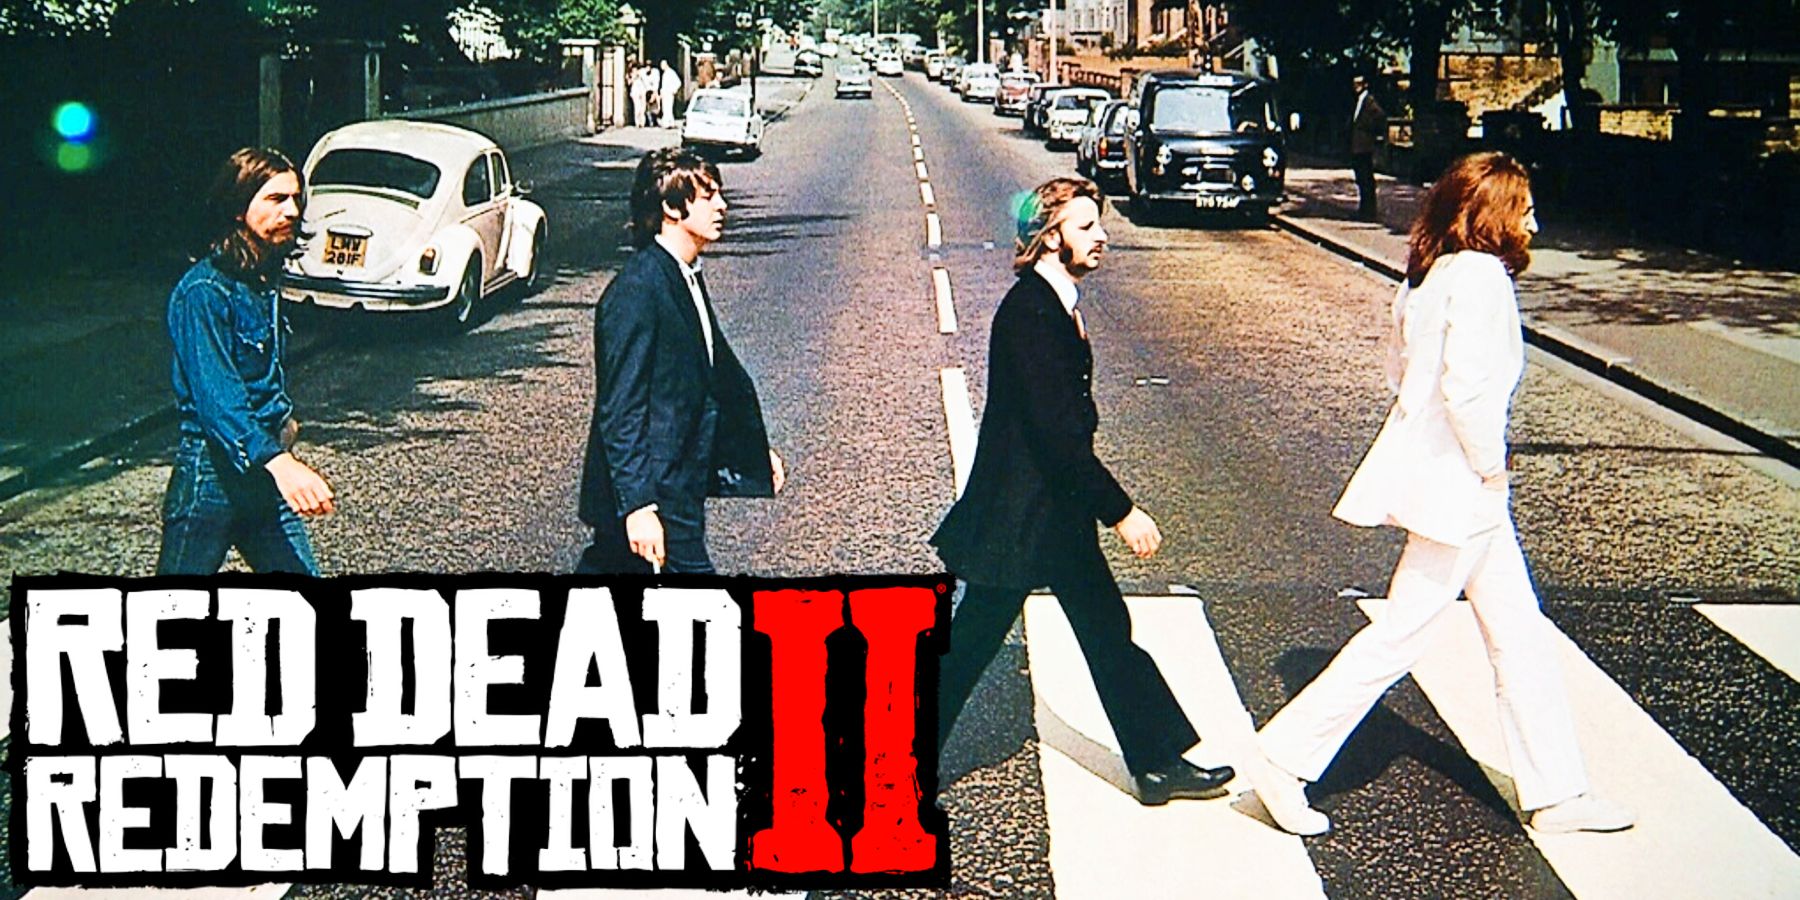 Ο οπαδός του Red Dead Redemption 2 κατάφερε να διασκευάσει το εξώφυλλο του εμβληματικού άλμπουμ των Beatles μέσα στο παιχνίδι